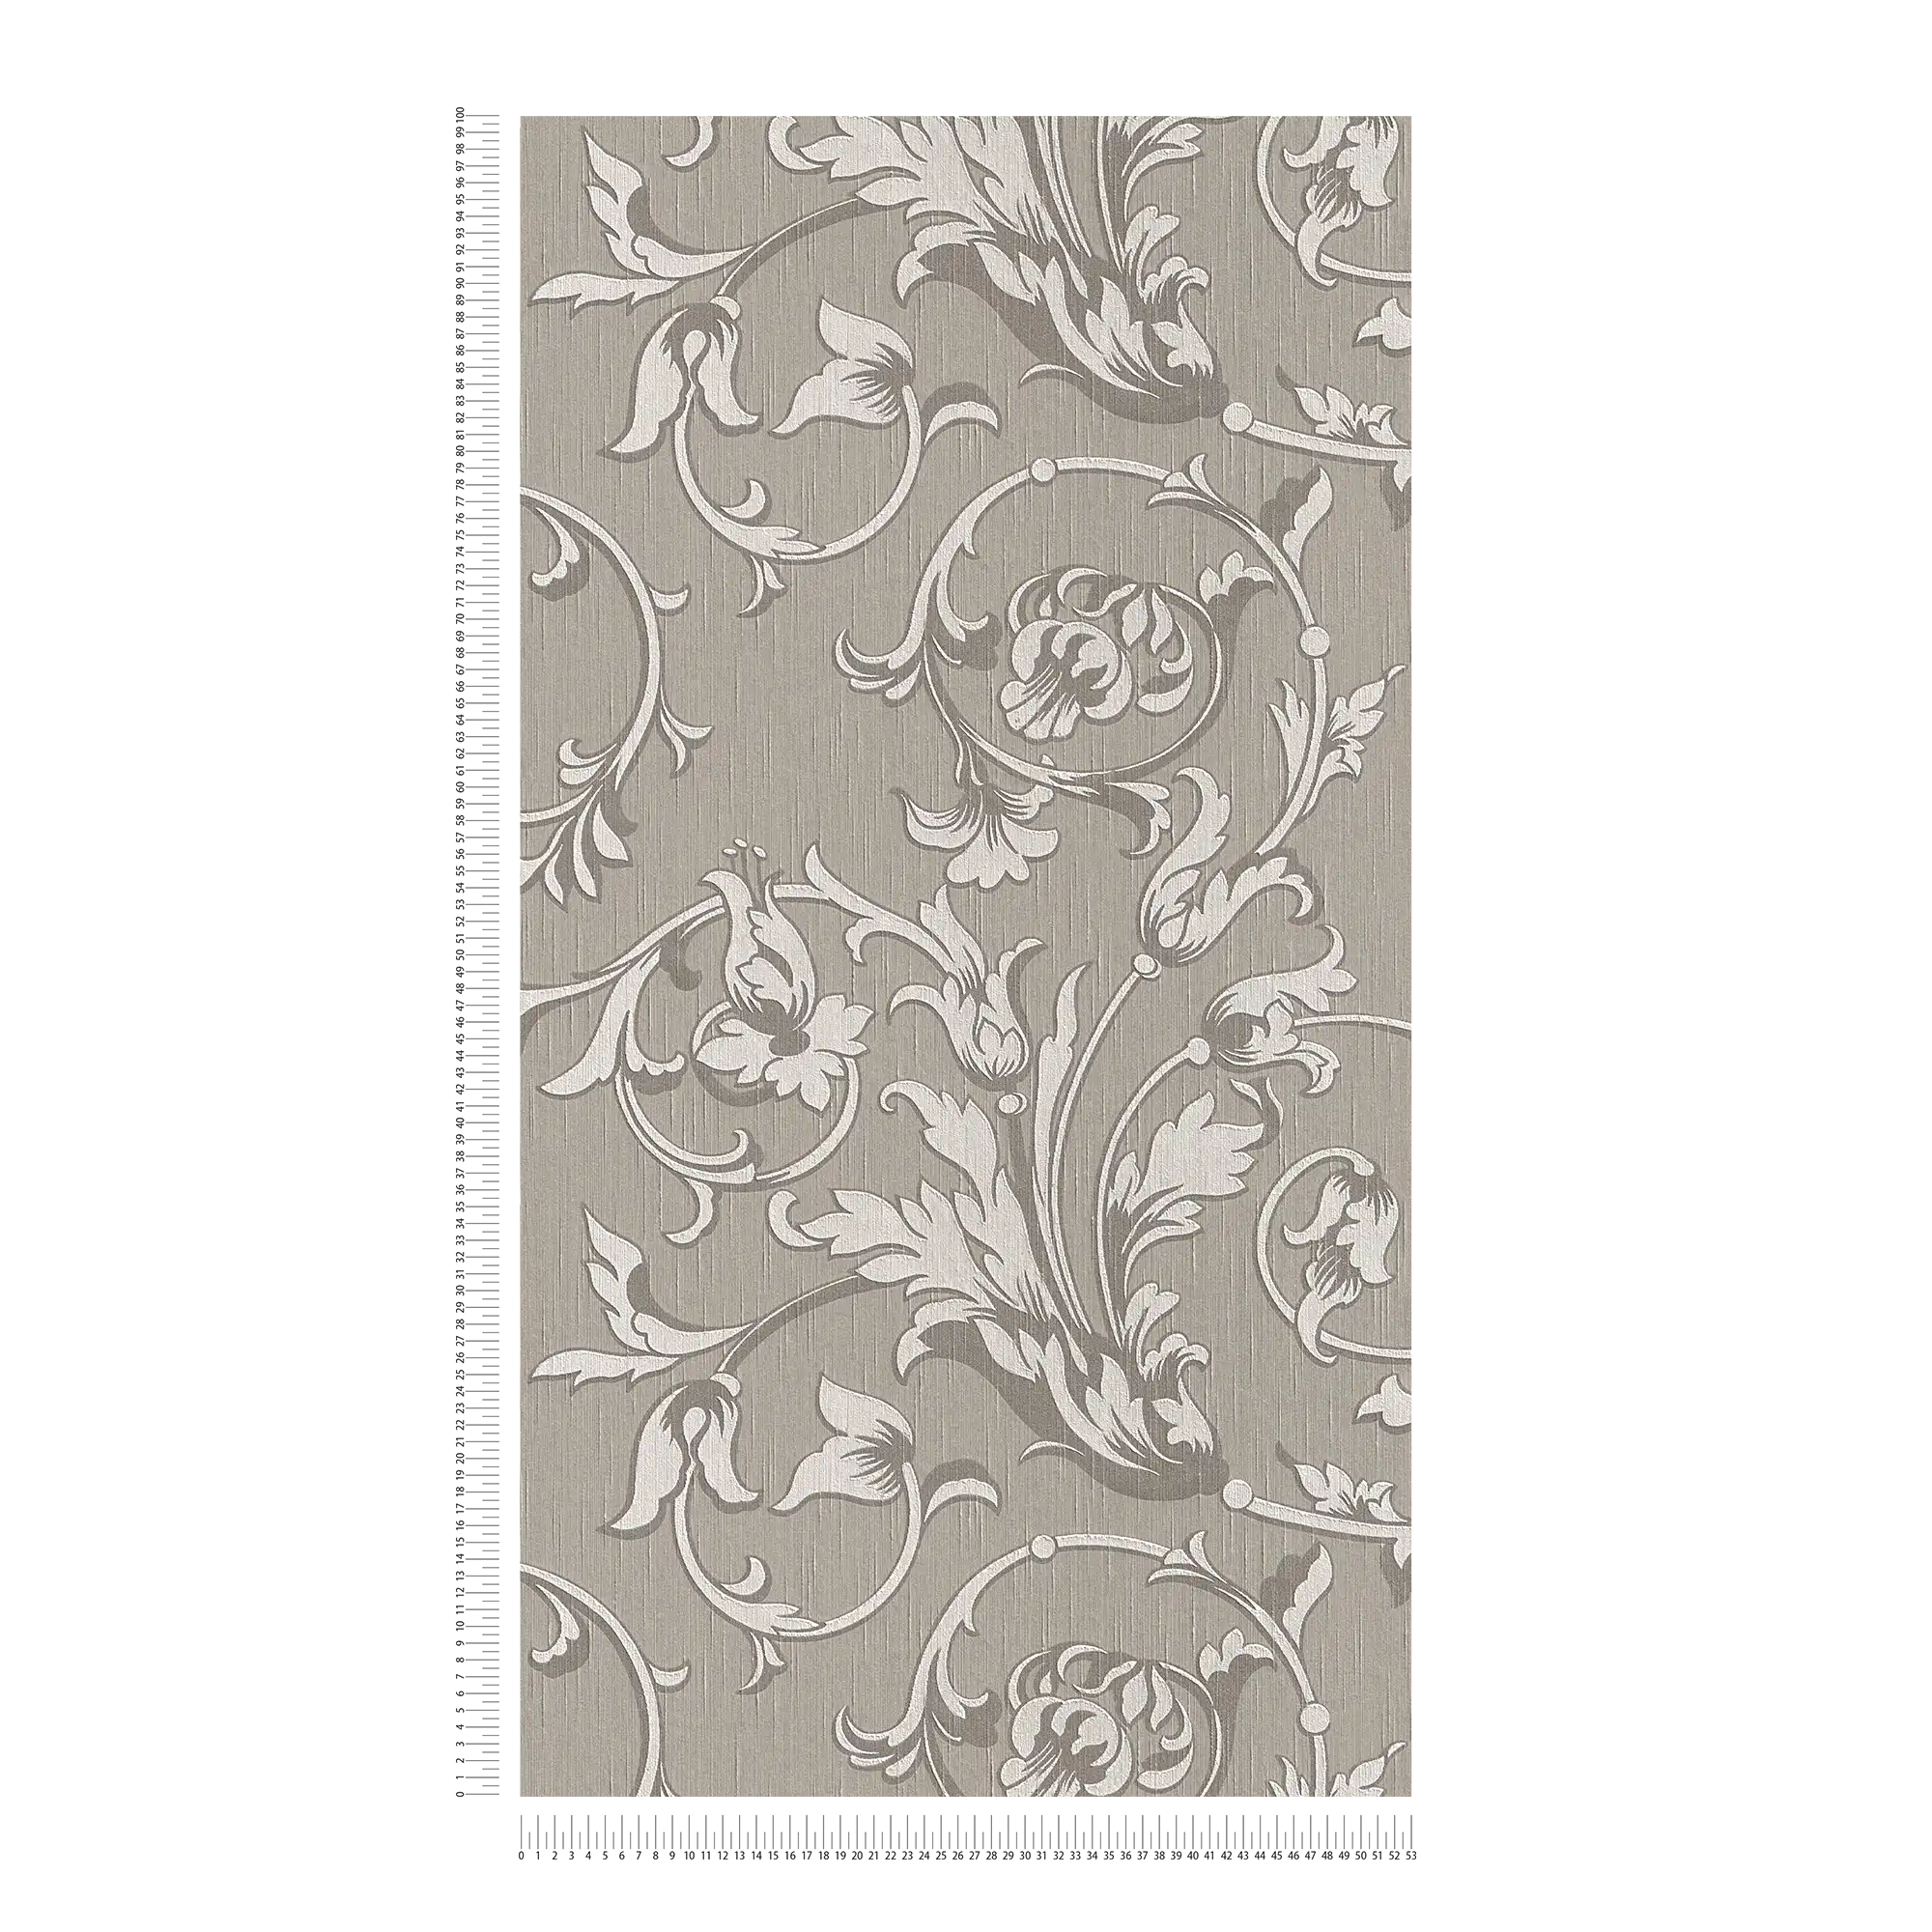             Tapete im Kolonial Stil mit floralen Ornamenten – Braun, Grau
        